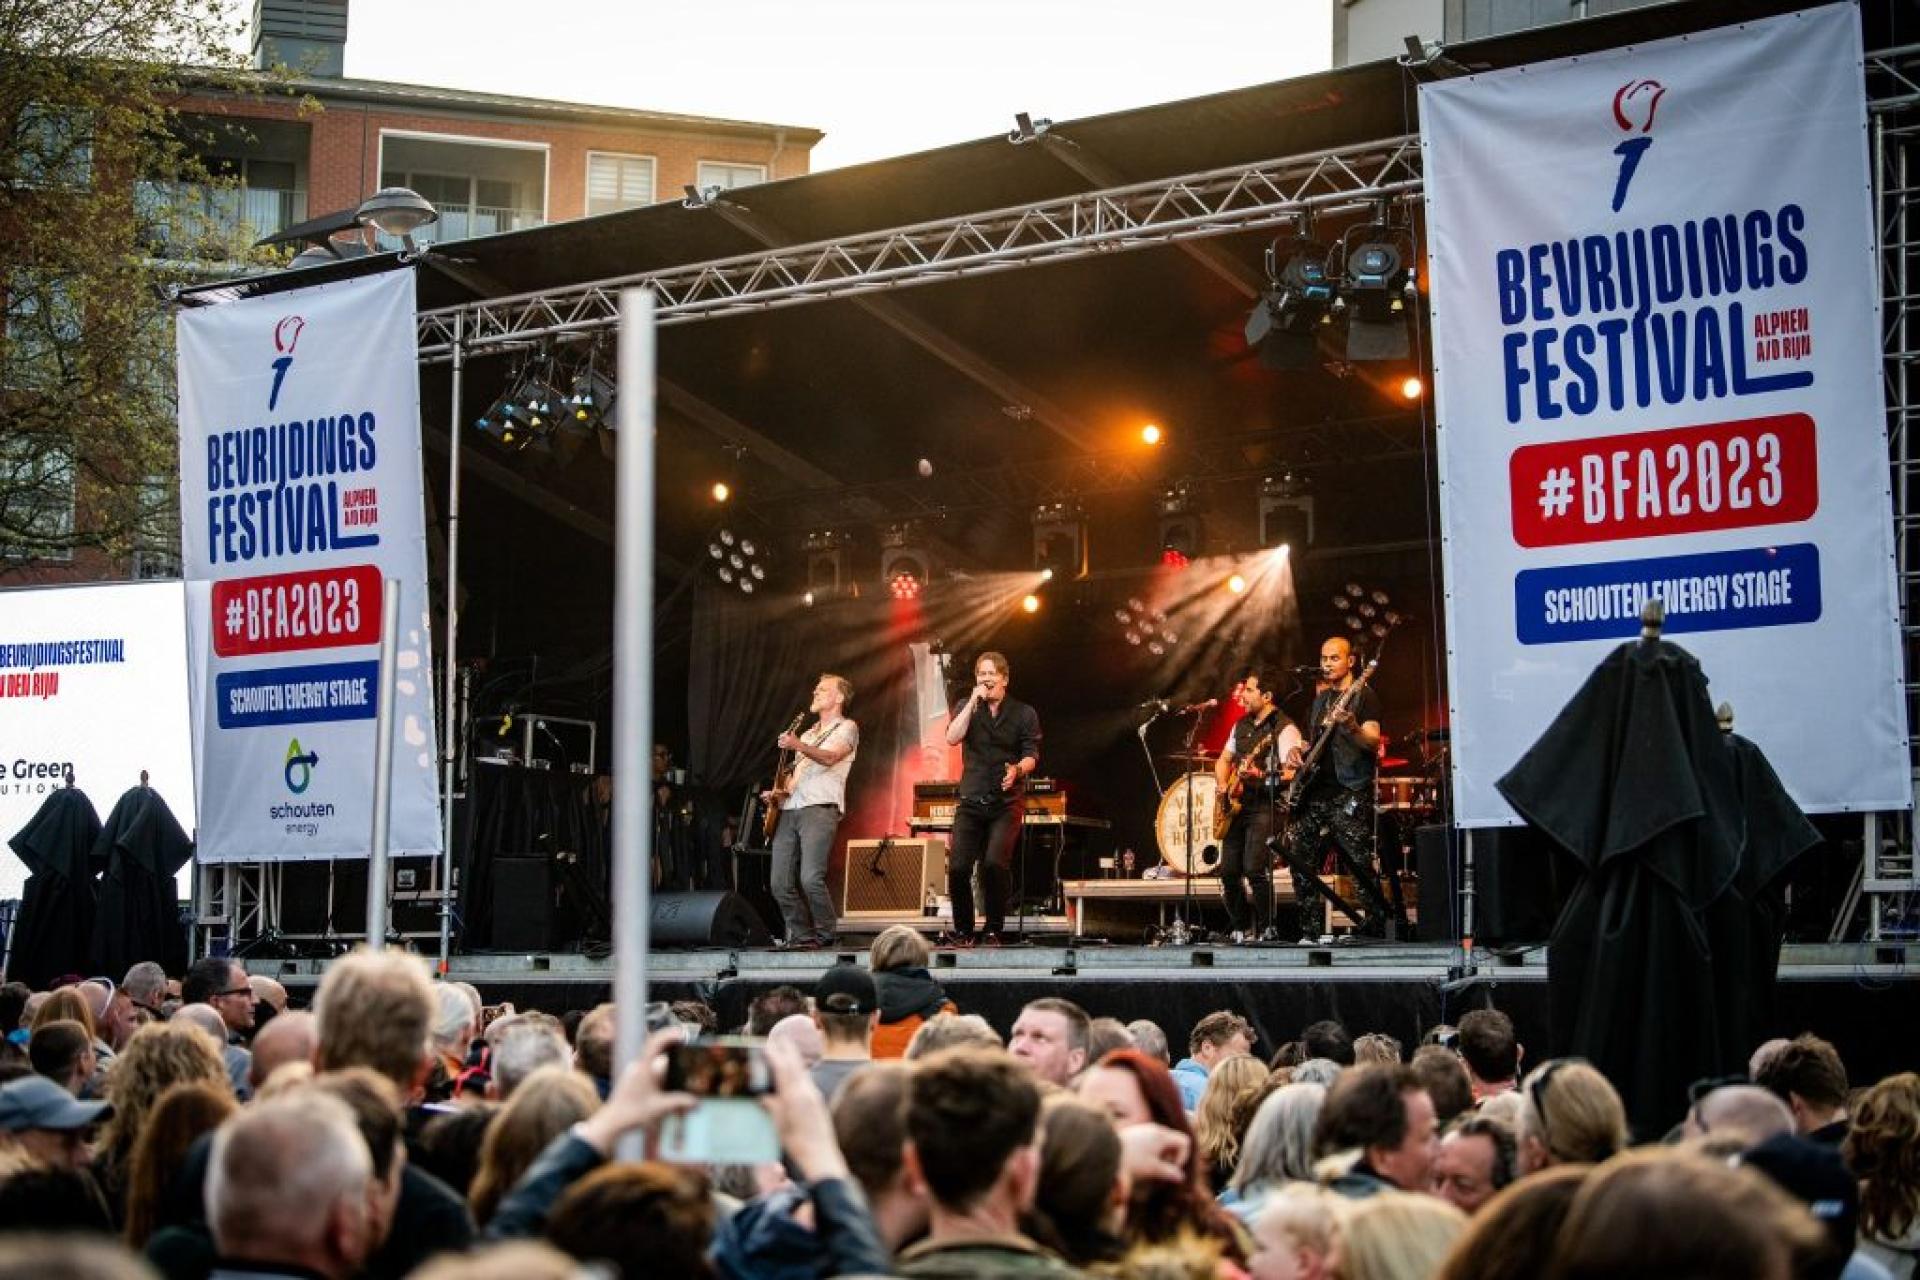 Bevrijdingsfestival Alphen aan den Rijn 2023